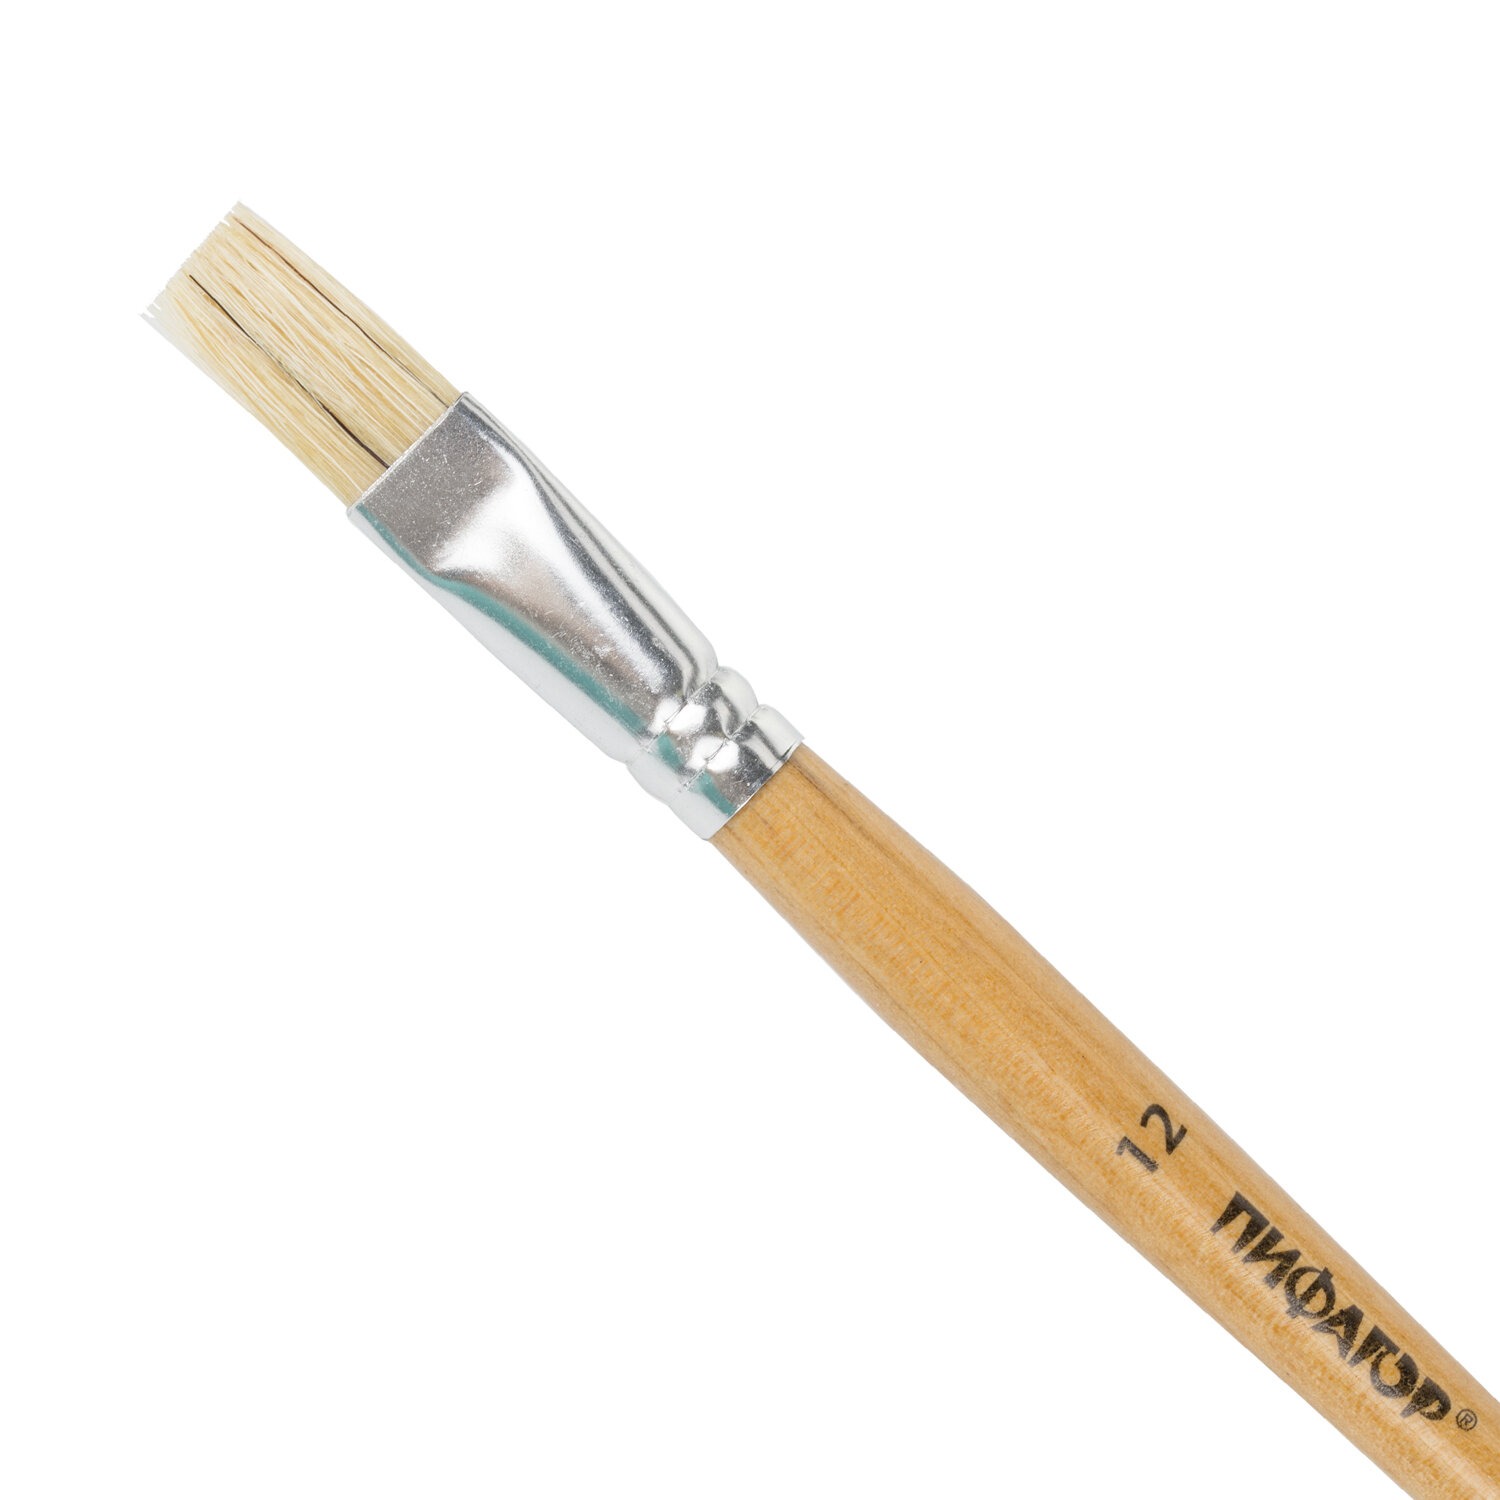 картинка Кисть № 12, щетина, плоская, деревянная лакированная ручка, ПИФАГОР, 200875 от магазина Альфанит в Кунгуре